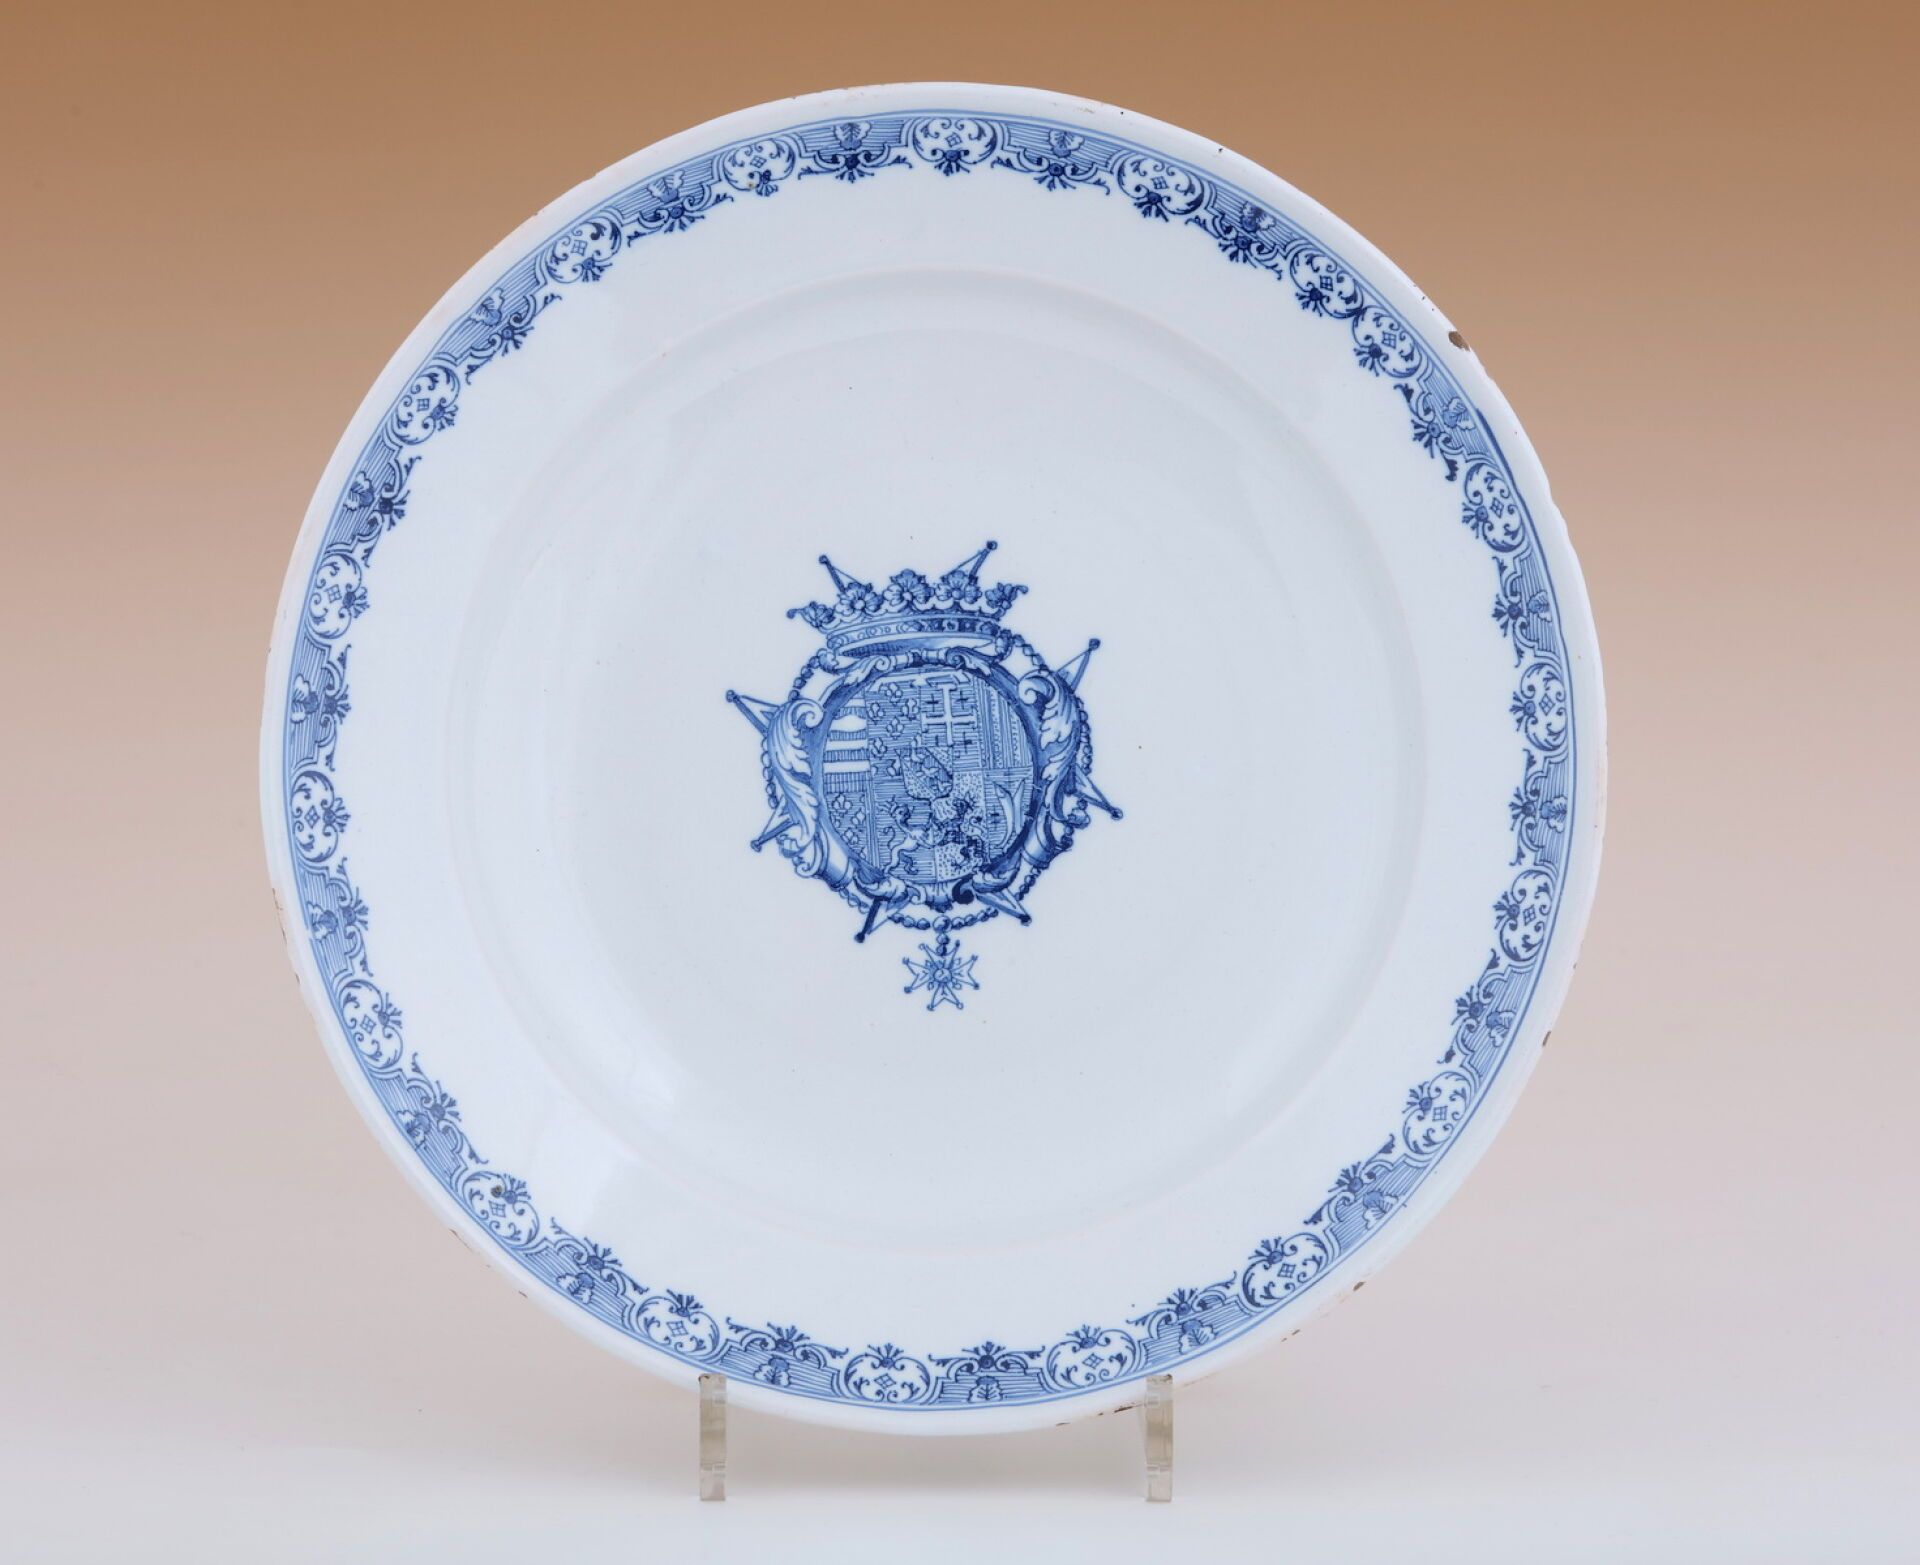 Null 大圆板
钵，18 世纪
釉陶 
中央为蓝色单色纹饰，饰有纹章，边缘有幔帐
长 31.5 厘米
(边缘有小的珐琅碎片）